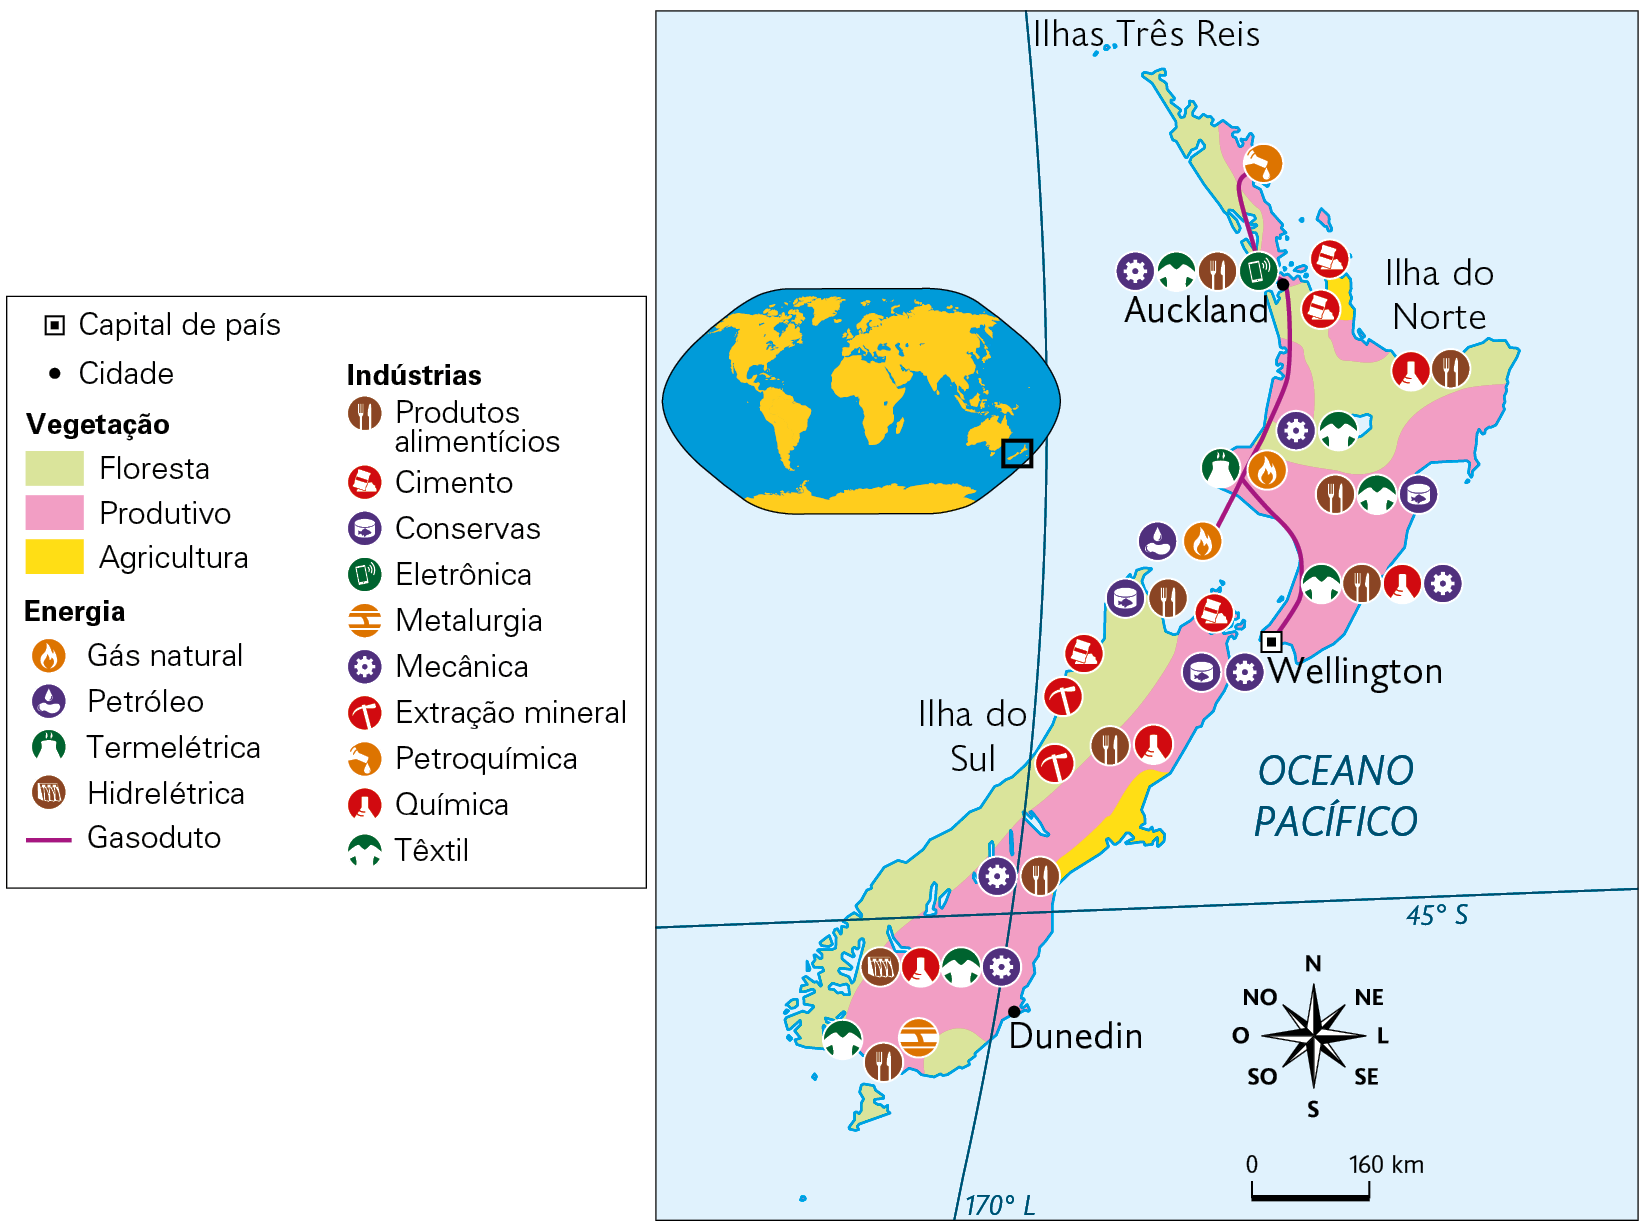 Mapa. Atividades econômicas da Nova Zelândia (2013). Vegetação. Floresta: norte e costa sudoeste. Produtivo: áreas no norte, nordeste e faixa central. Agricultura: pequena área no sudeste. Energia. Gás natural, Petróleo, Termelétrica, Hidrelétrica, espalhados por todo o país. Gasoduto aparece no norte interligando Auckland e a capital Wellington. Indústrias. Produtos alimentícios, Cimento, Conservas, Eletrônica, Metalurgia, Mecânica, Extração mineral, Petroquímica, Química, Têxtil em todo o território. No canto superior esquerdo, mapa de localização, planisfério destacando a região descrita. No canto inferior, a rosa dos ventos e a escala: 160 quilômetros por centímetro.